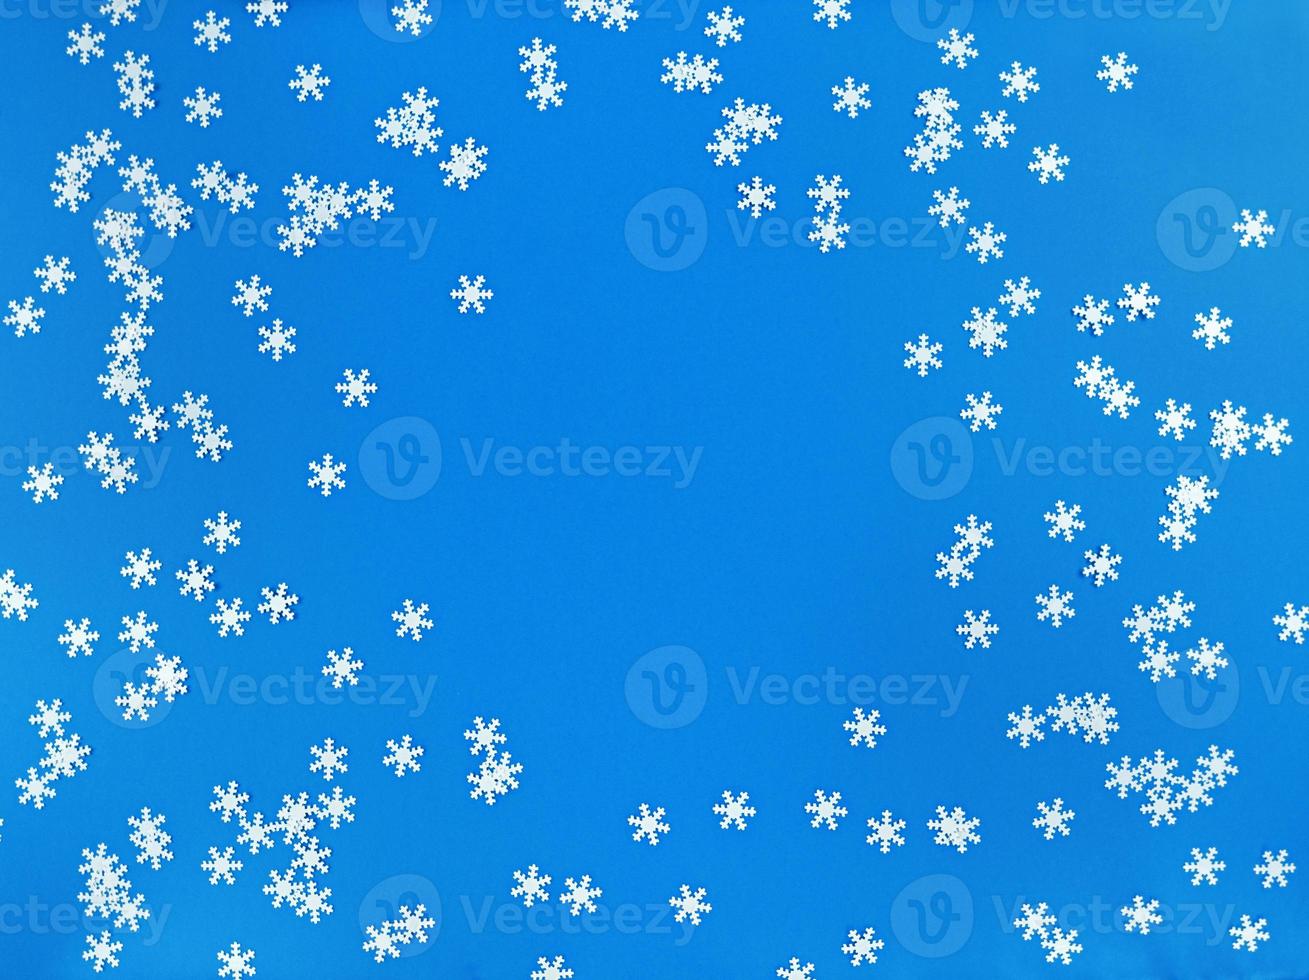 verspreide witte sneeuwvlokken op een blauwe achtergrond. eenvoudig plat leggen met kopieerruimte. Stock foto. foto